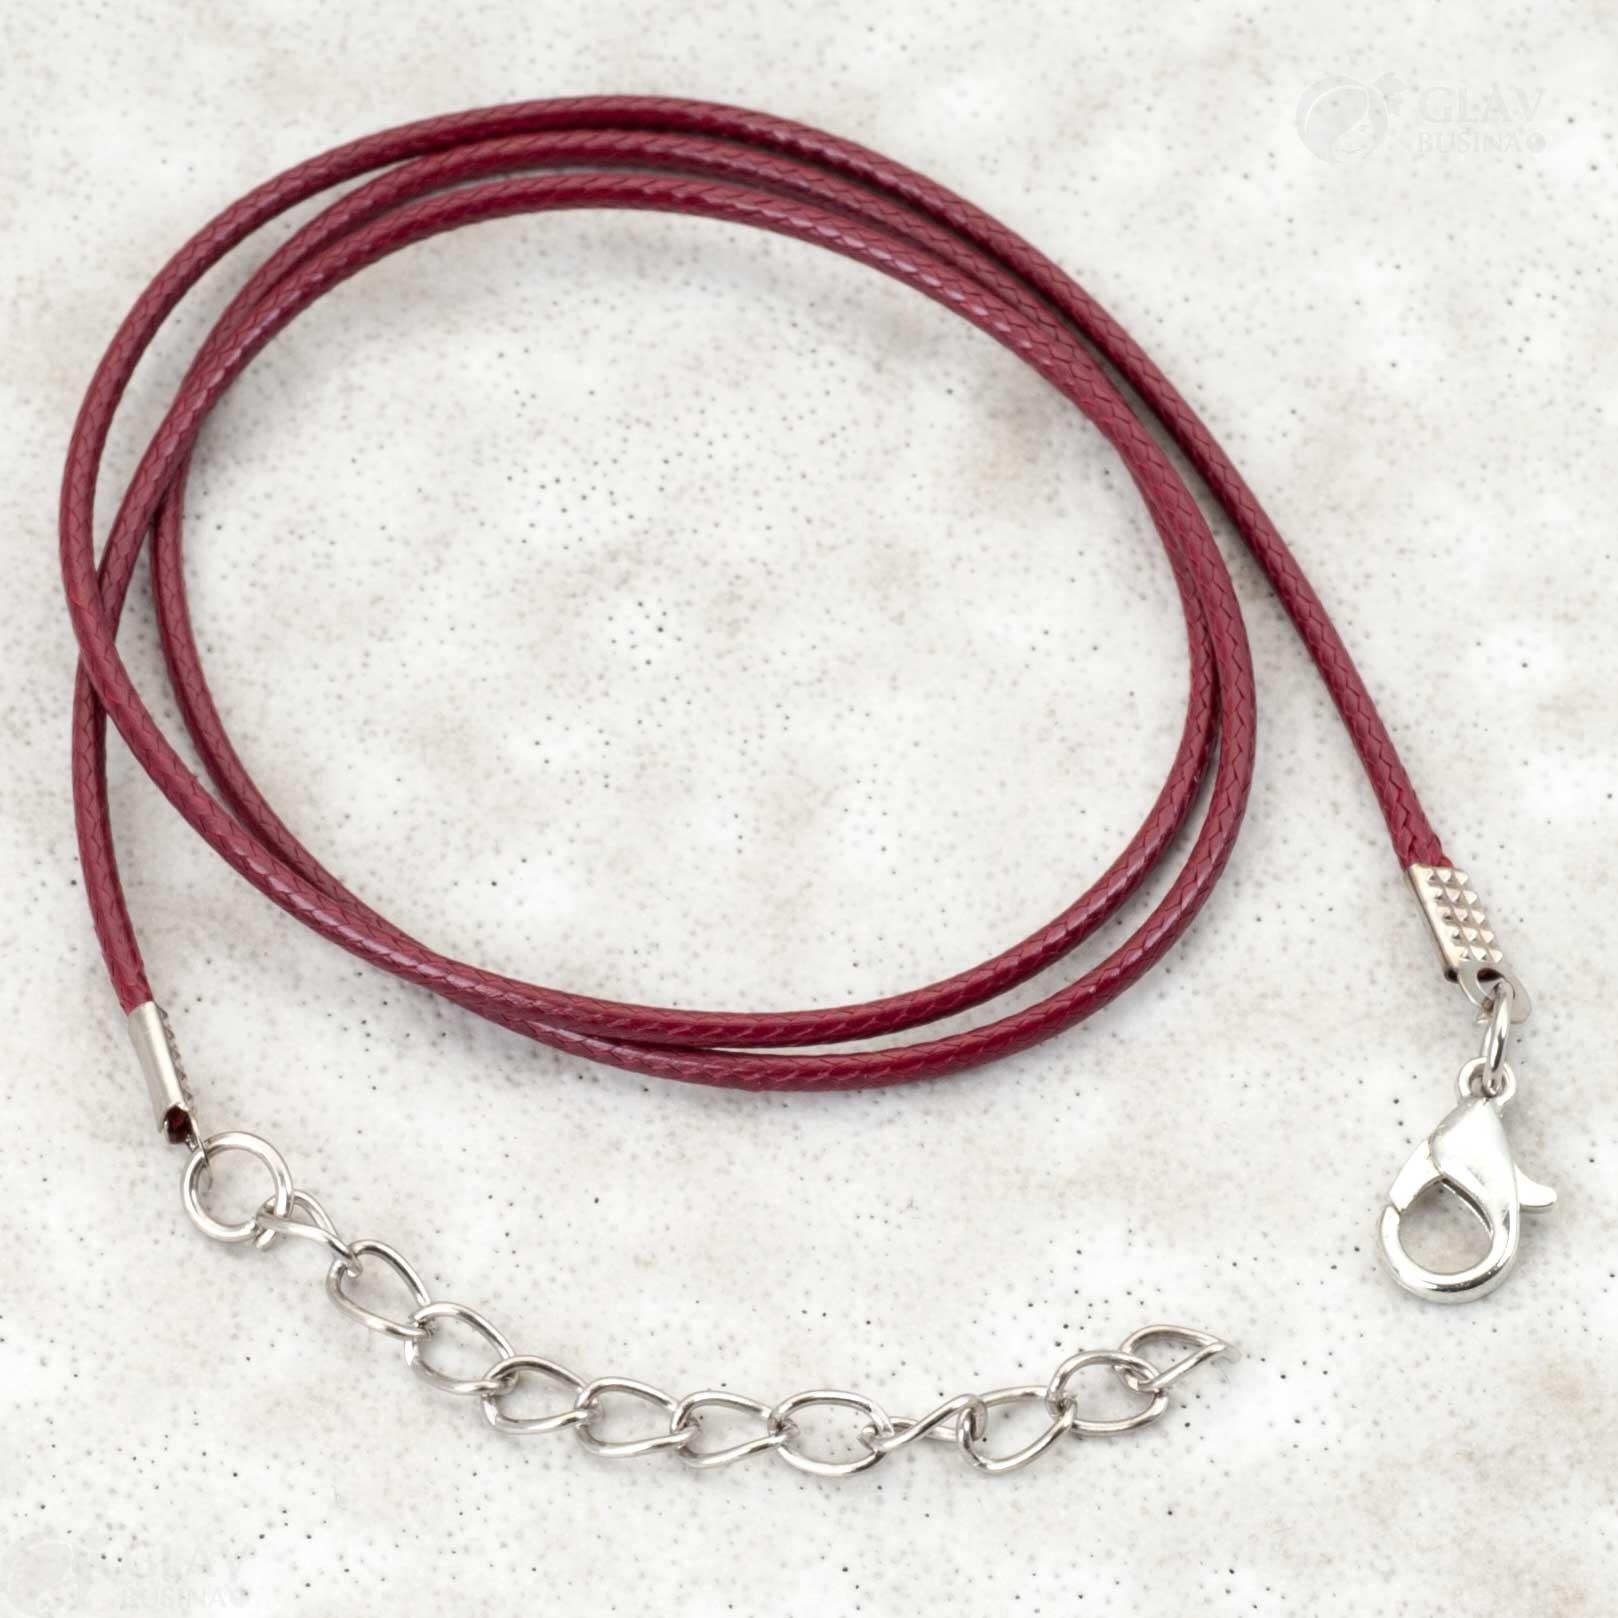 Бордовый полиэстровый вощеный кулон на шнуре 45см, змеиная текстура, удлинительная цепочка, фурнитура платинового цвета, похож на кожу.